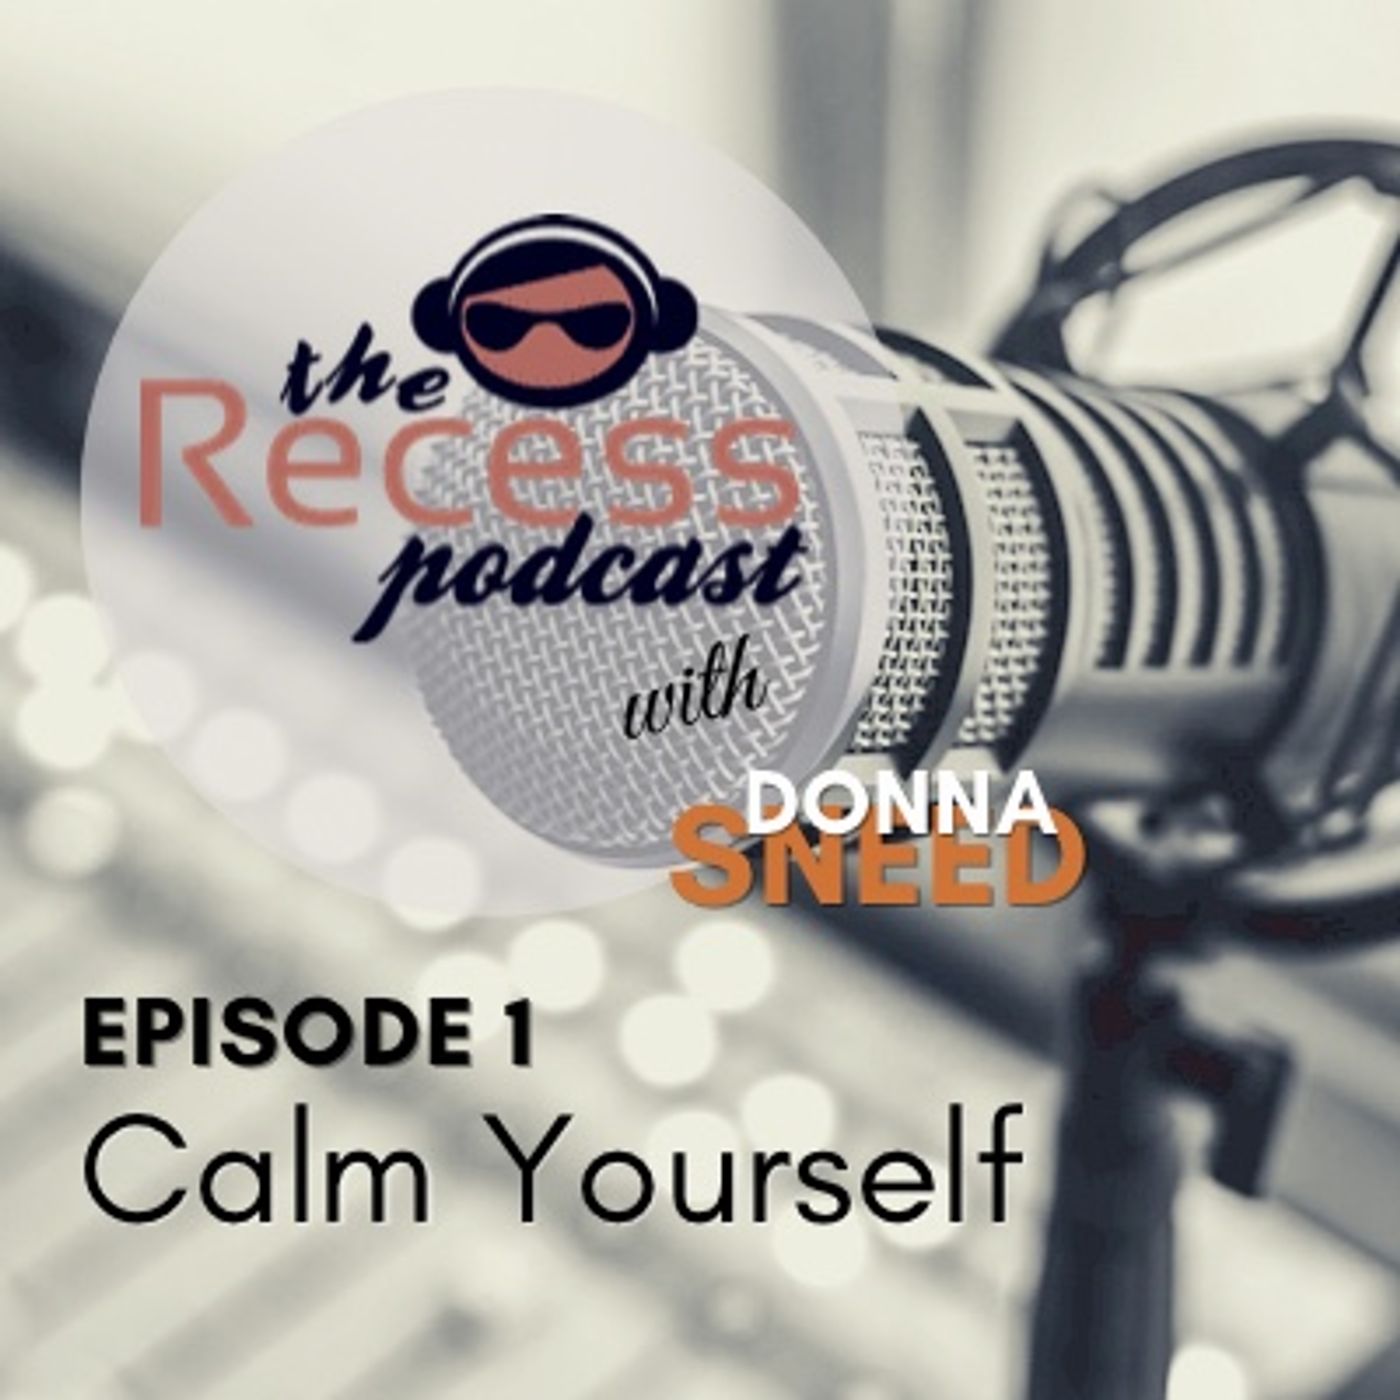 Episode 1 - Calm Yourself